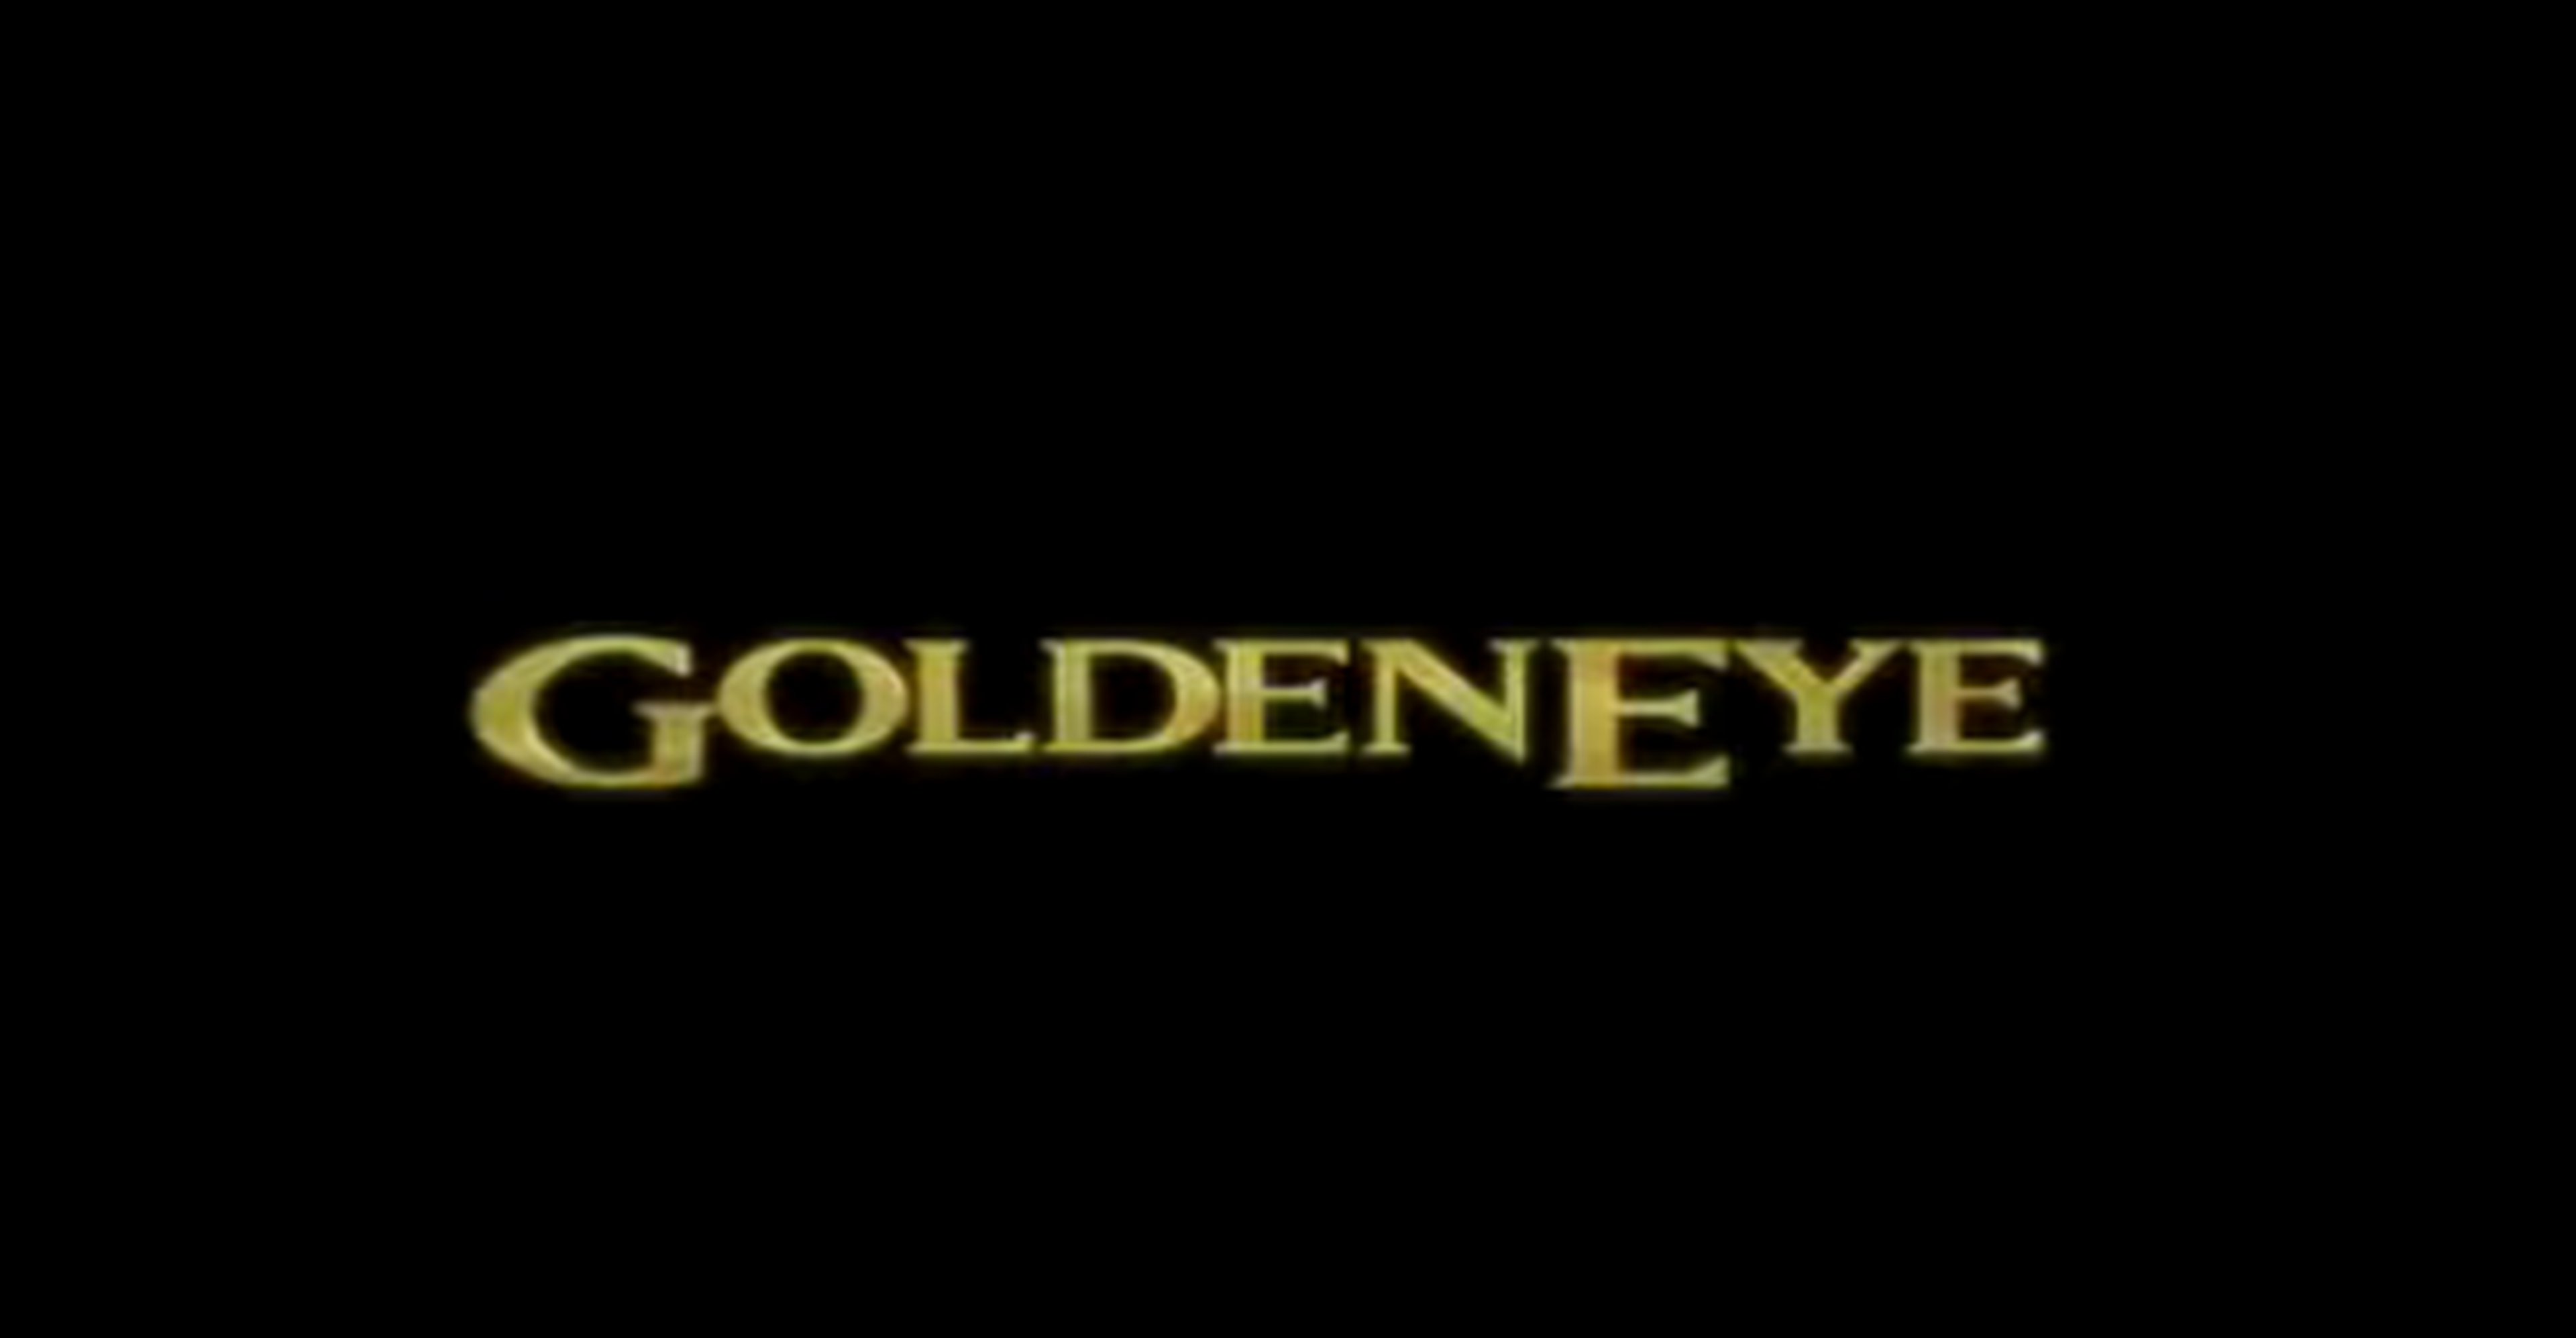 Goldeneye 007 de N64 renace en Wii